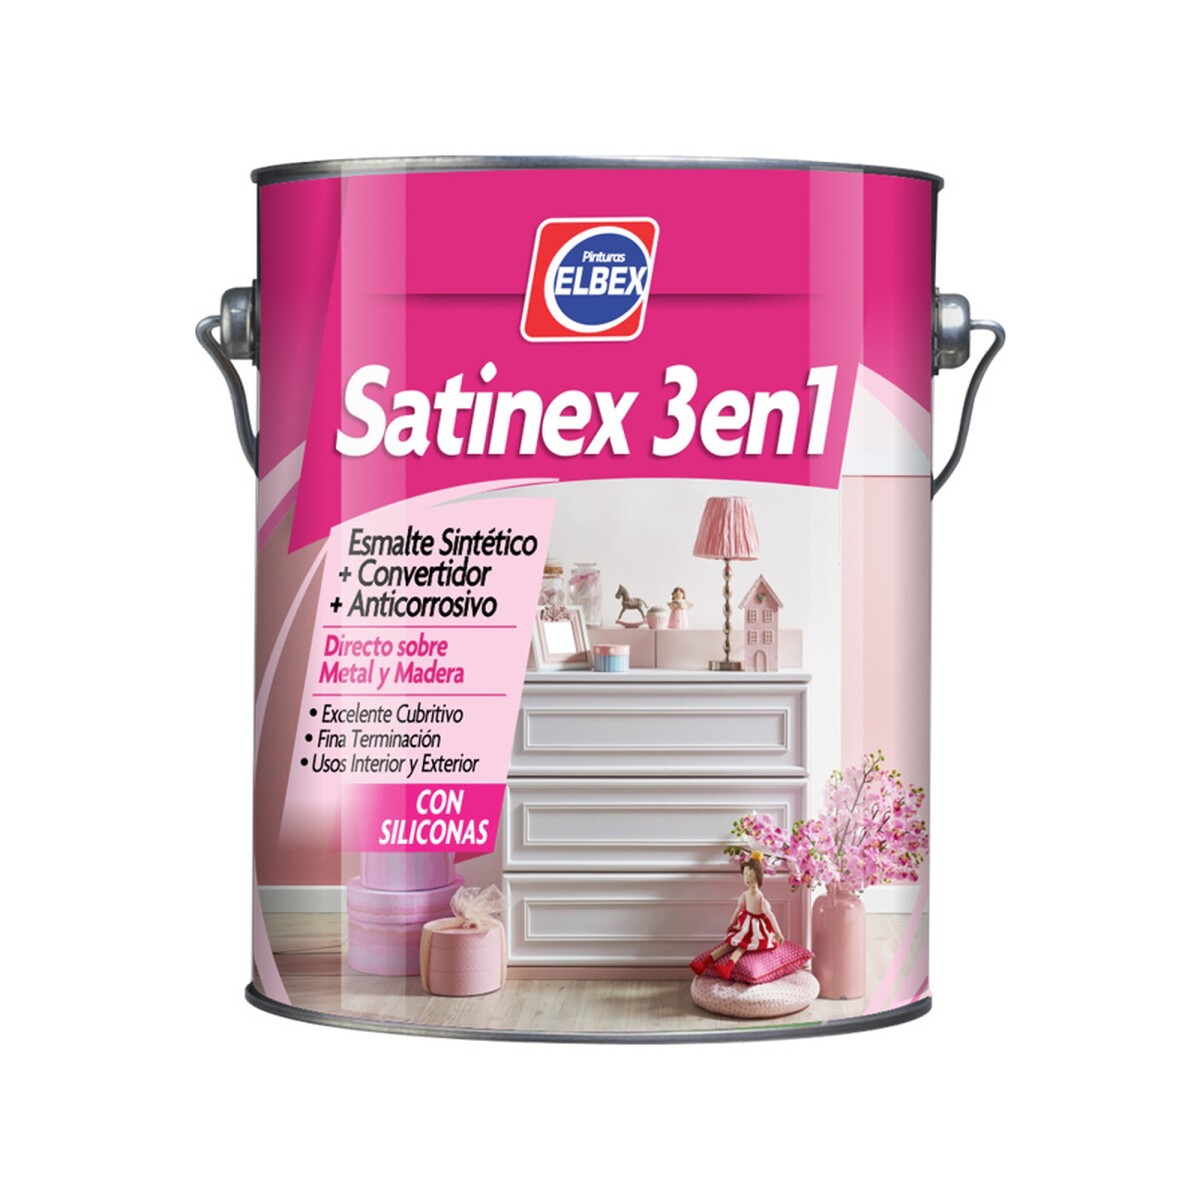 Satinex 3en1 Elbex 1 Lts blanco 